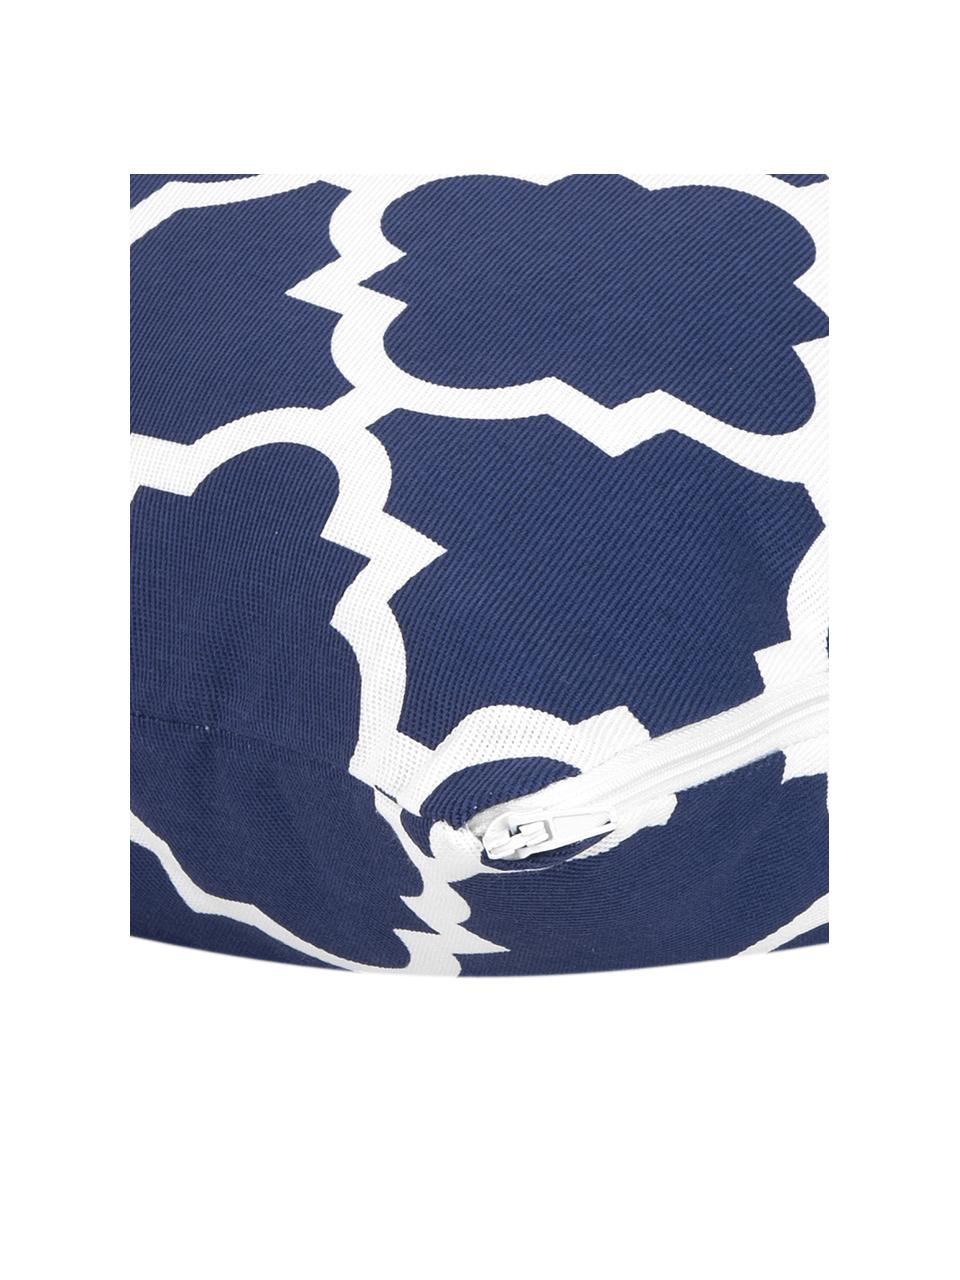 Kissenhülle Lana in Marineblau mit grafischem Muster, 100% Baumwolle, Marineblau, Weiss, B 45 x L 45 cm